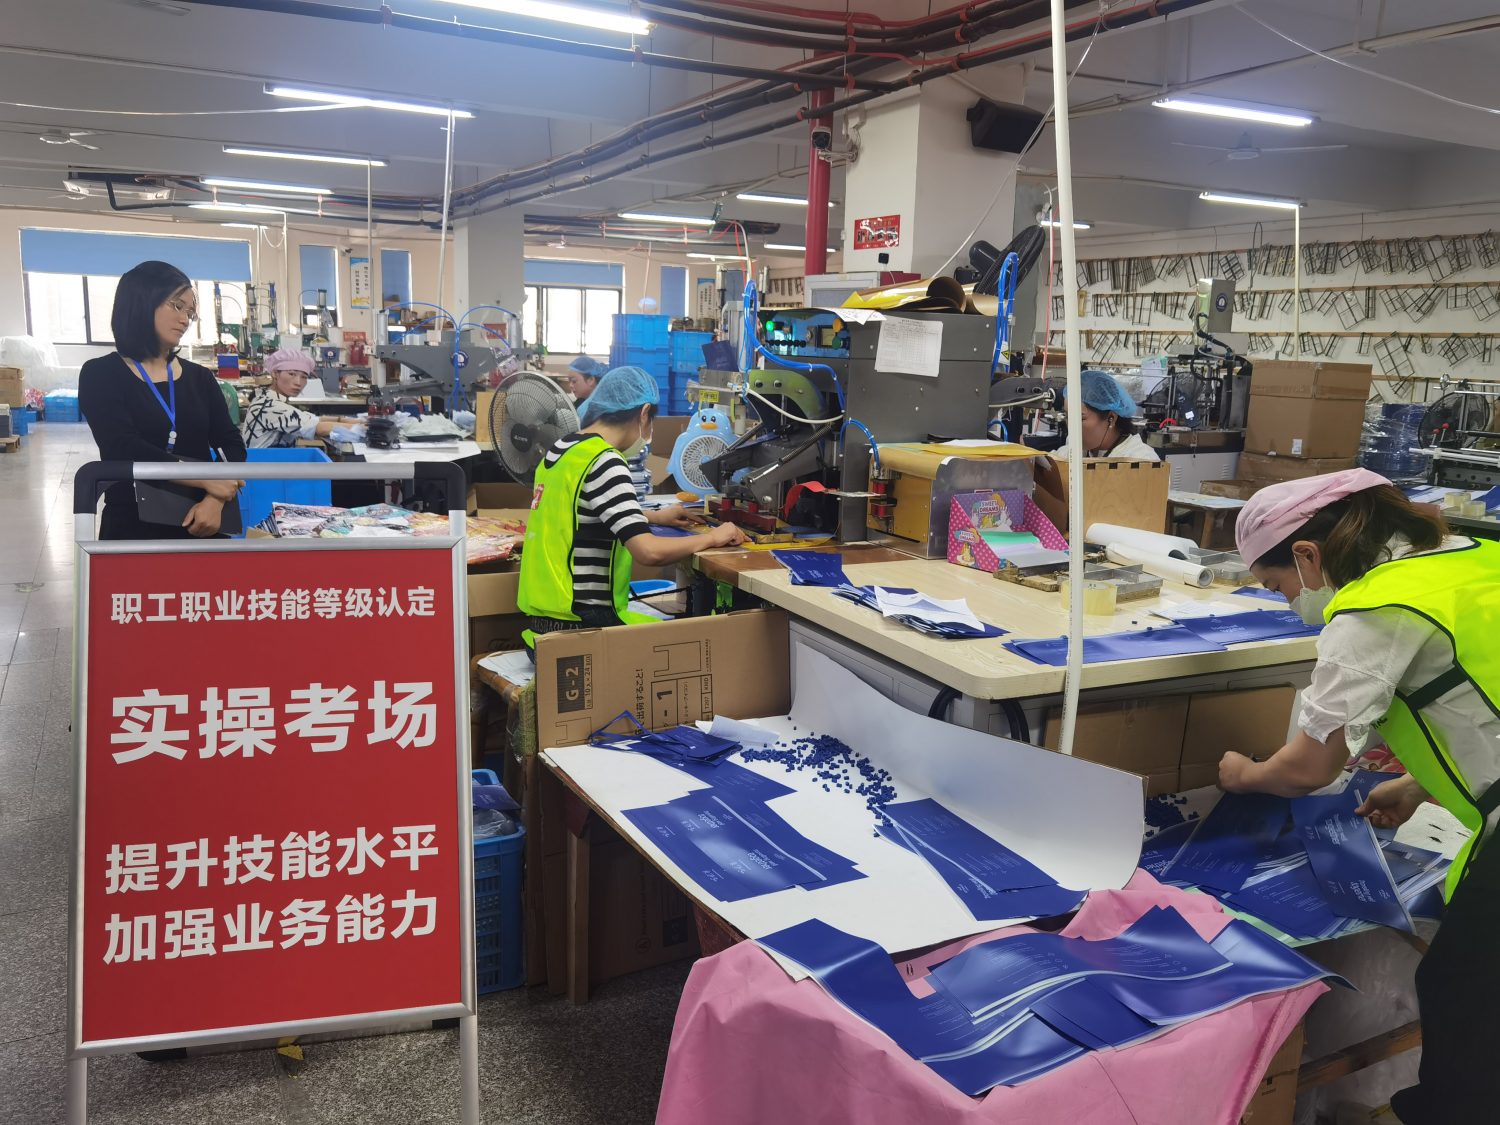 龙港市职业技能等级企业自主评价走进浙江华昇工艺品有限公司